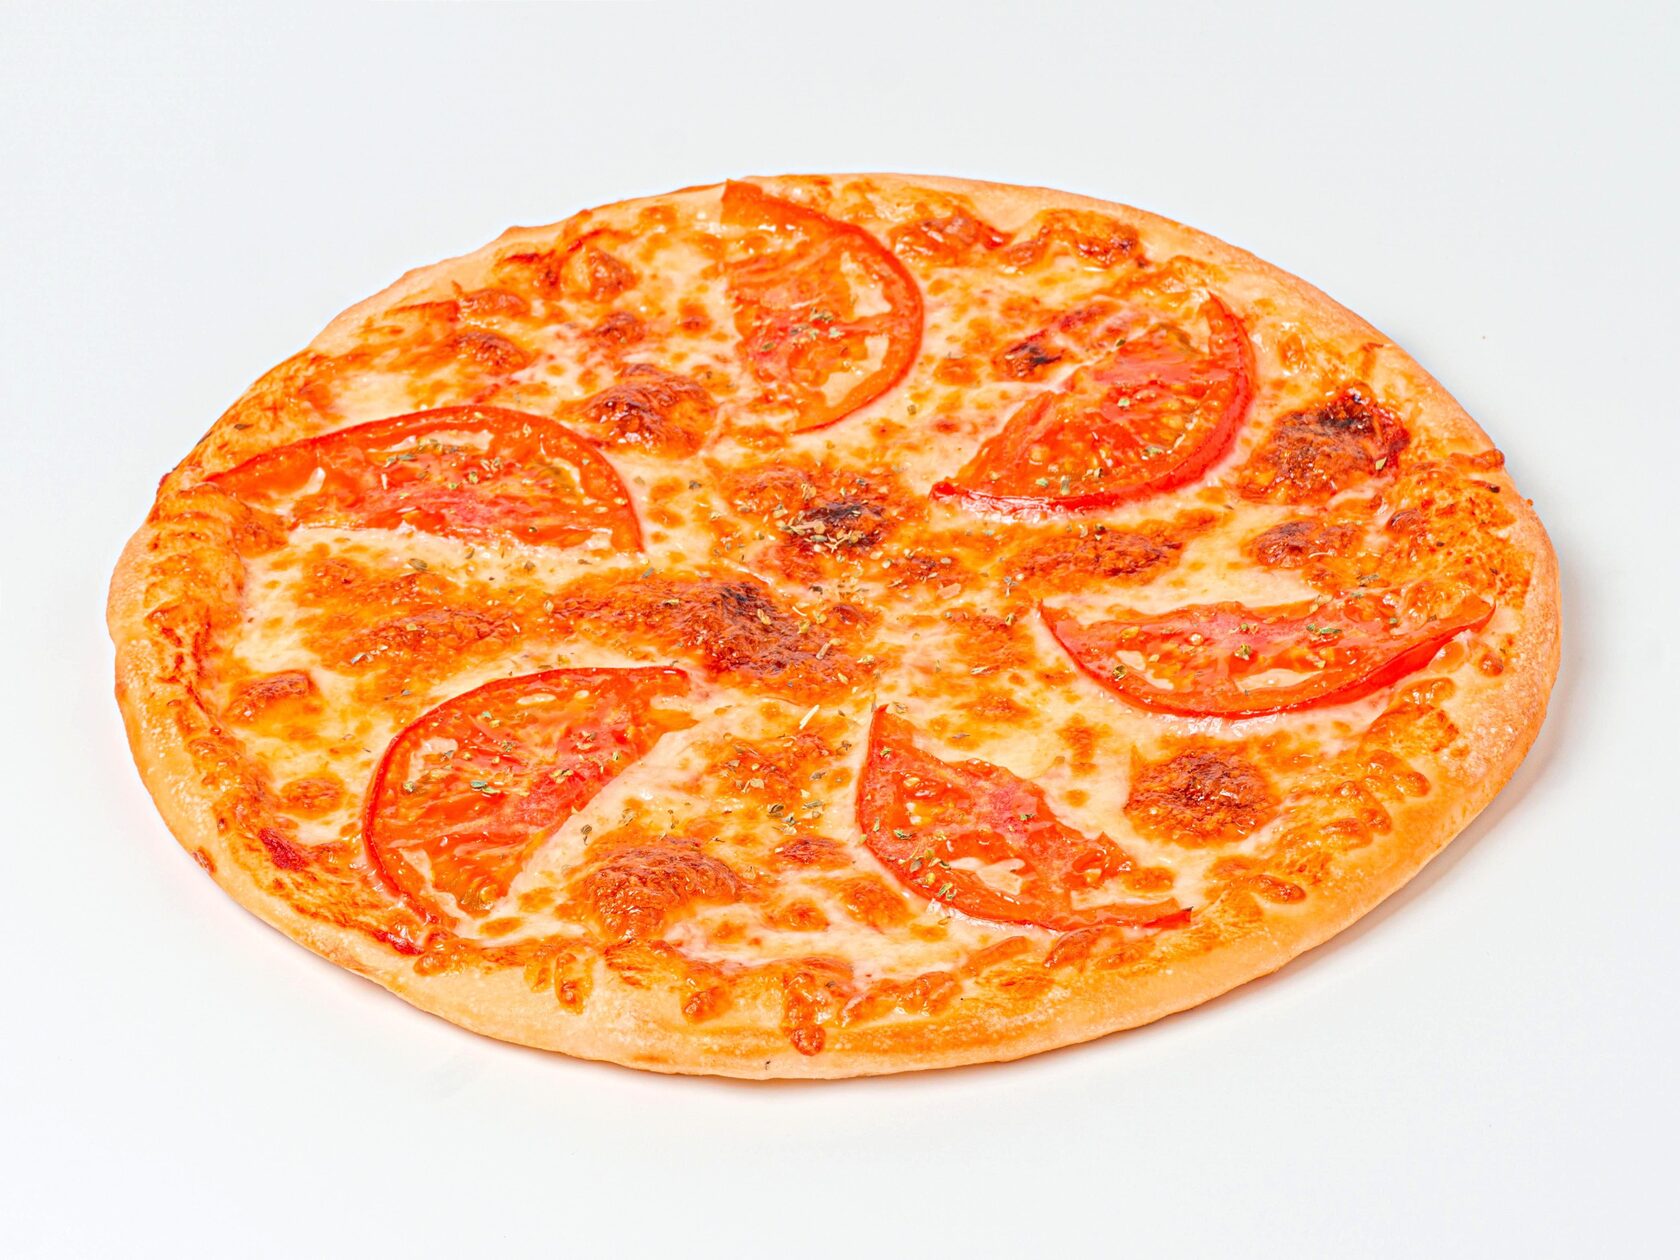 тесто для пиццы маргарита тонкое и мягкое как в пиццерии фото 118